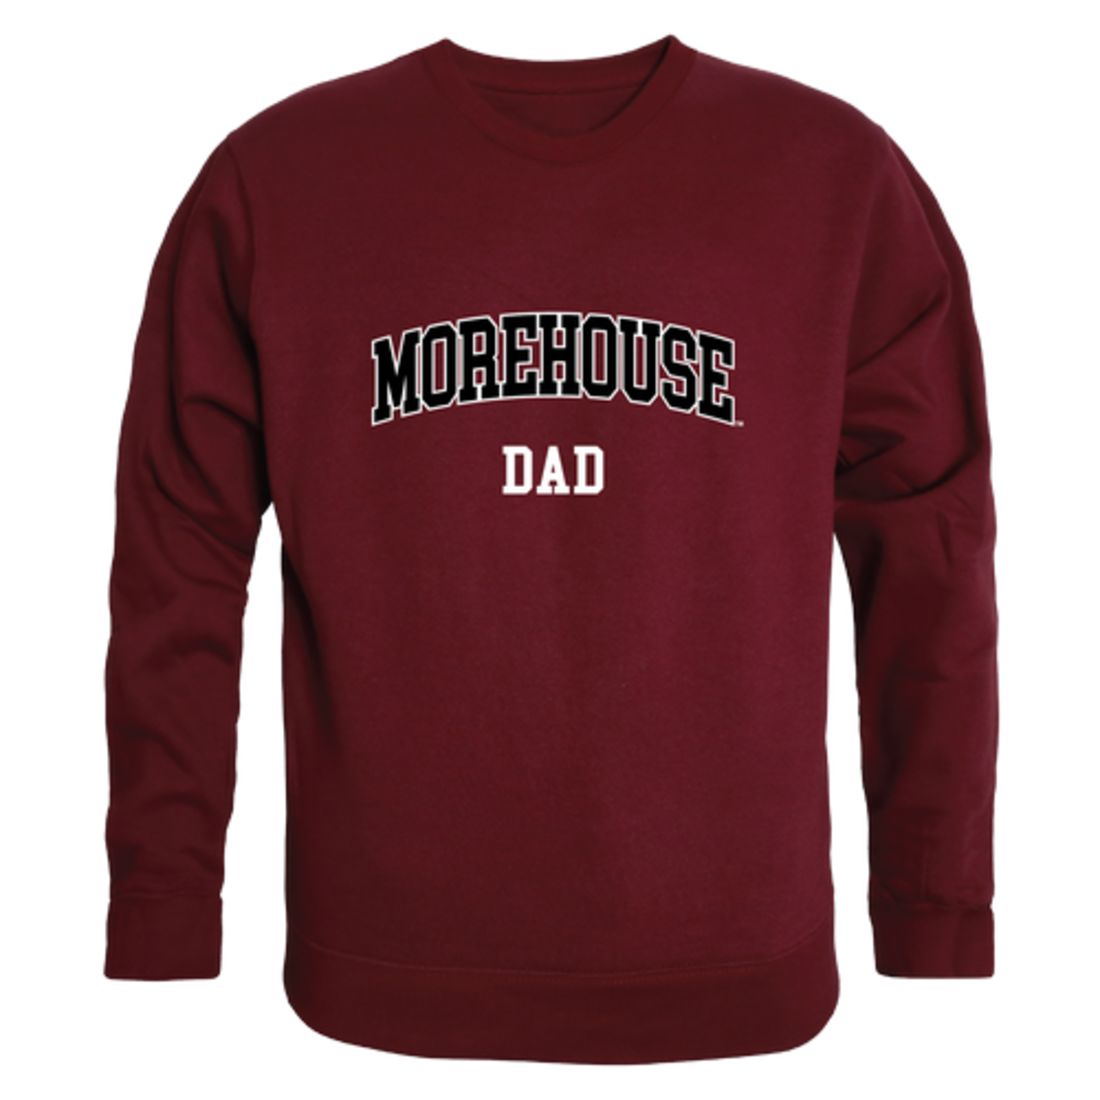 Morehouse College Maroon Tigers Dad Fleece Crewneck Pullover Sweatshirt Heather Grey-Campus-Wardrobe